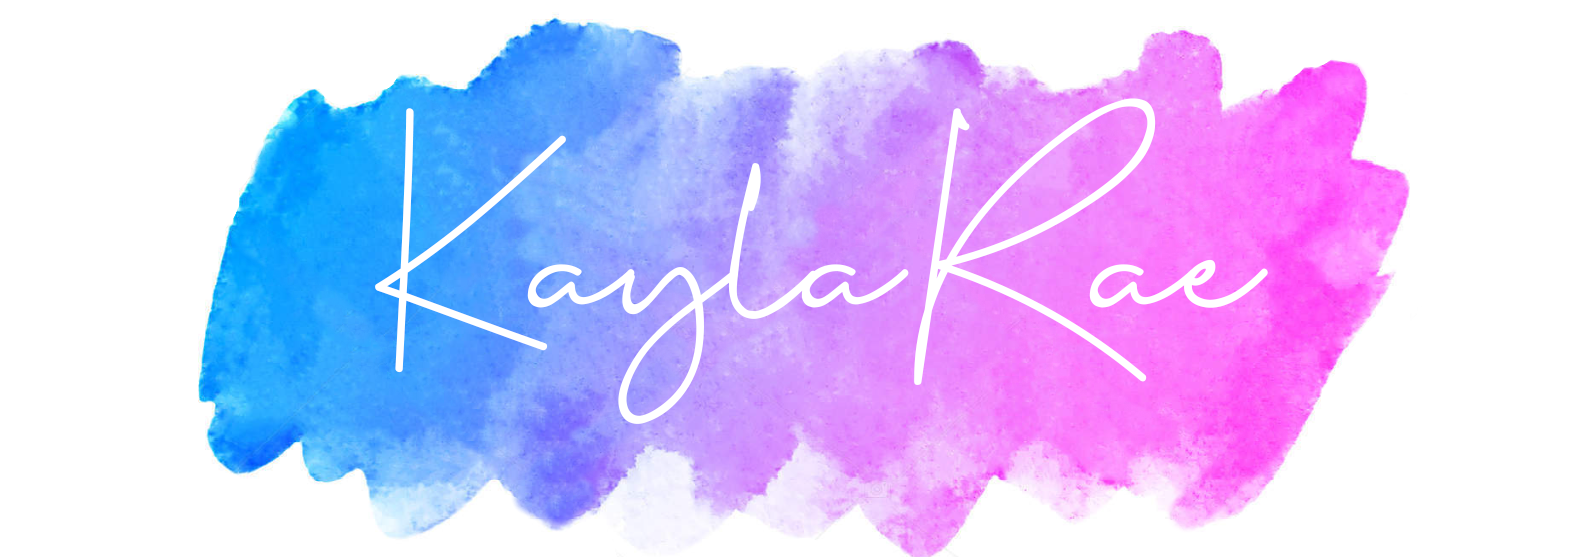 KaylaRae Full - KaylaRae.png